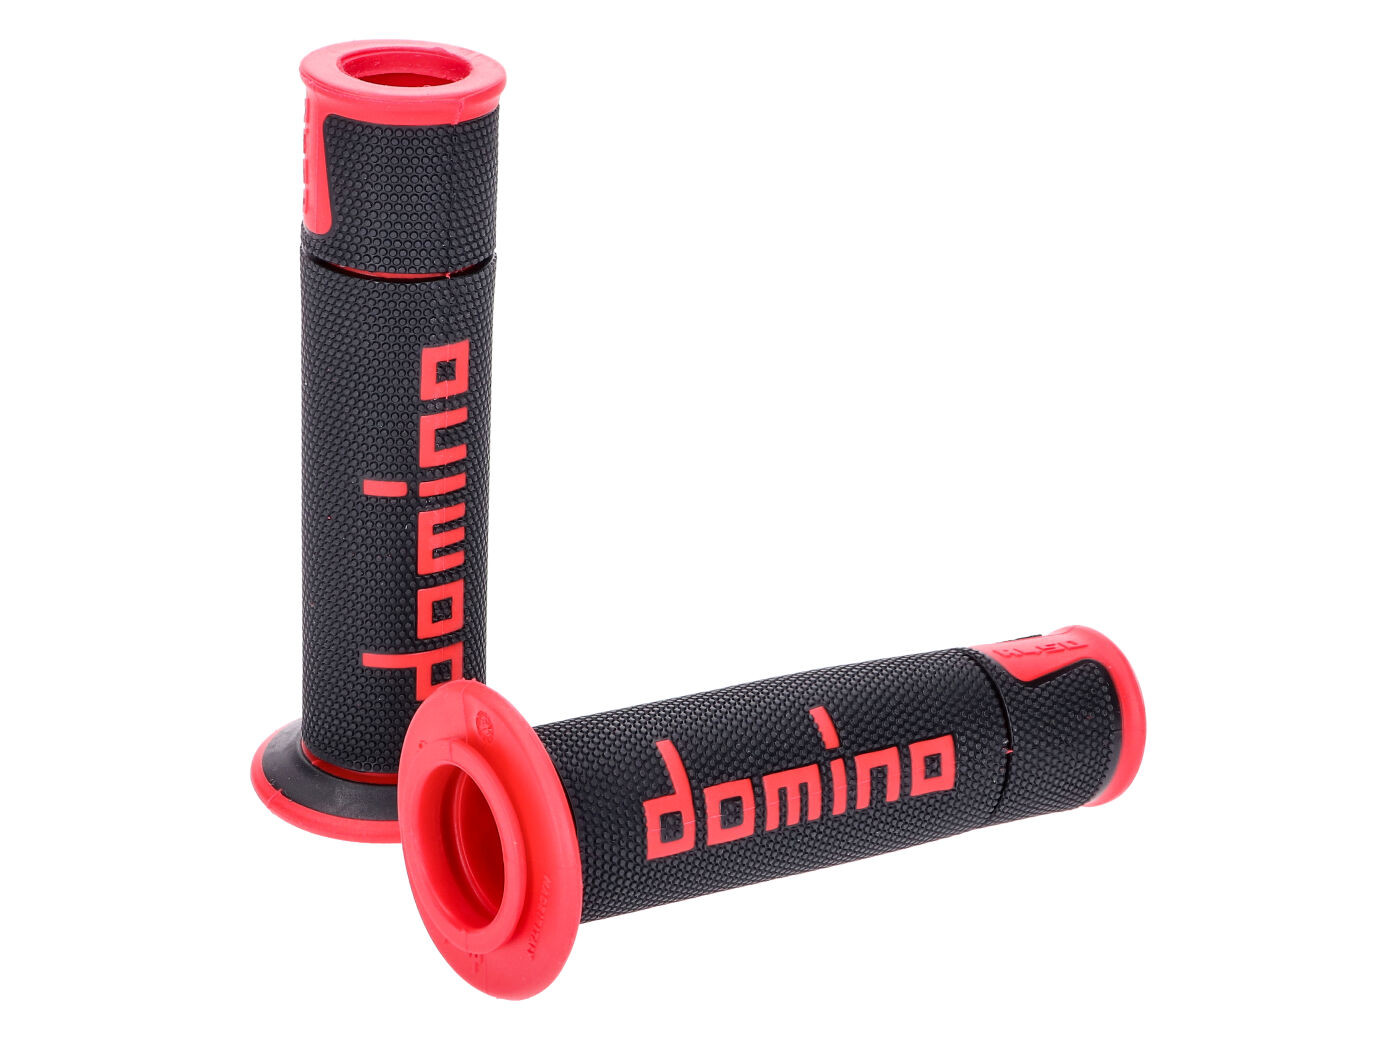 Domino A450 on-road verseny fekete/piros nyitott végű kormánymarkolat szett